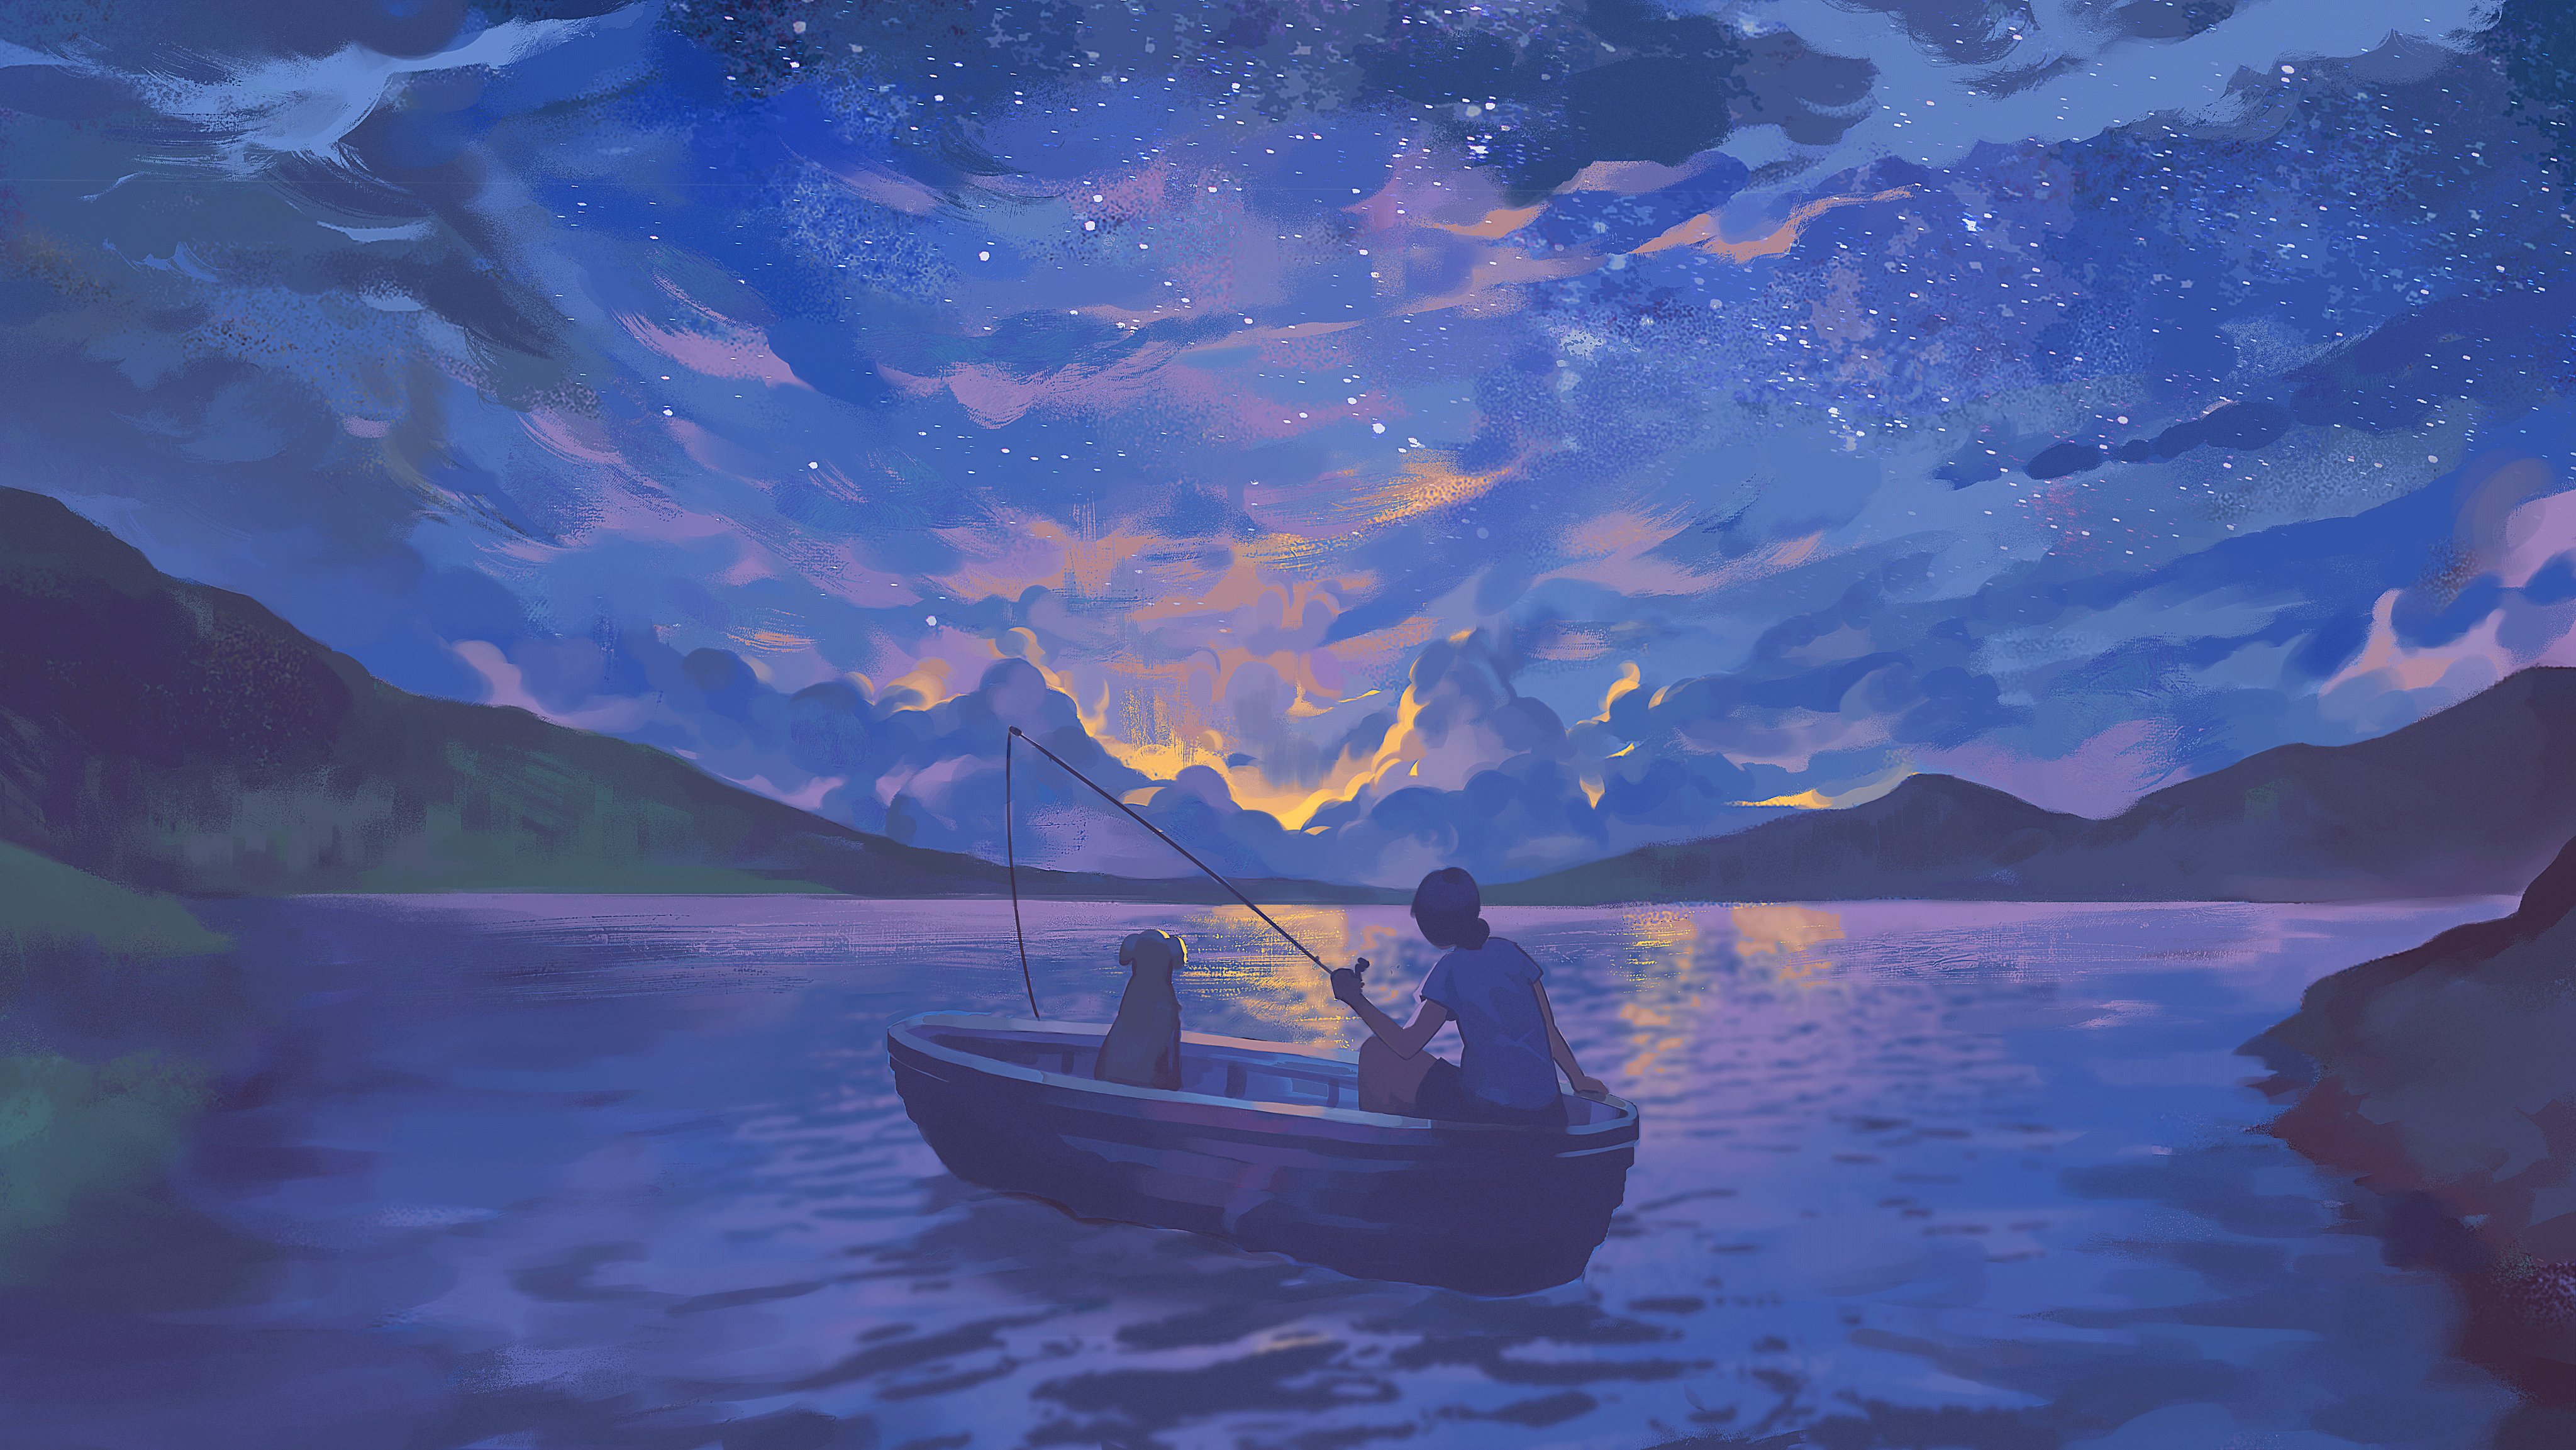 Artwork Night Boat Dog Fishing Lake Stars 4096x2305